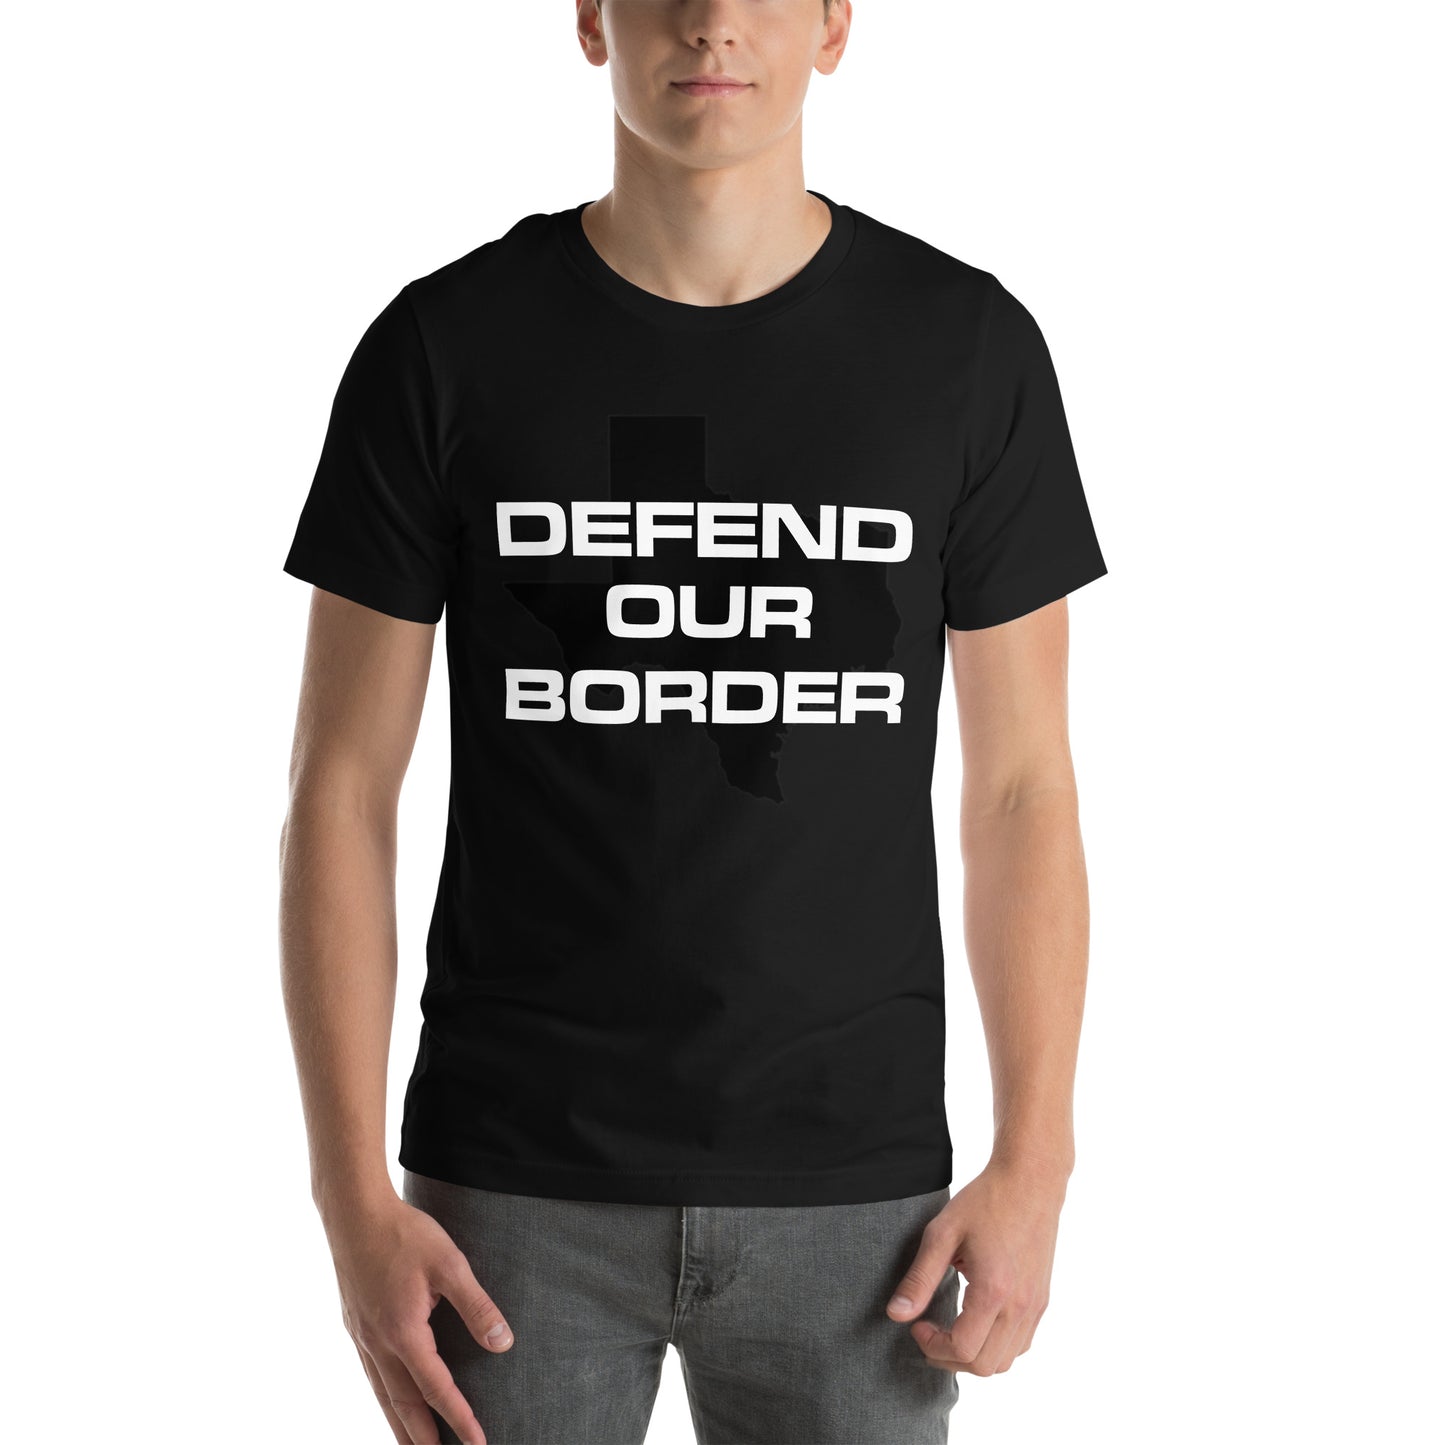 Verteidigen Sie unser Border Texas Rally Unisex-T-Shirt. Zeigen Sie Unterstützung